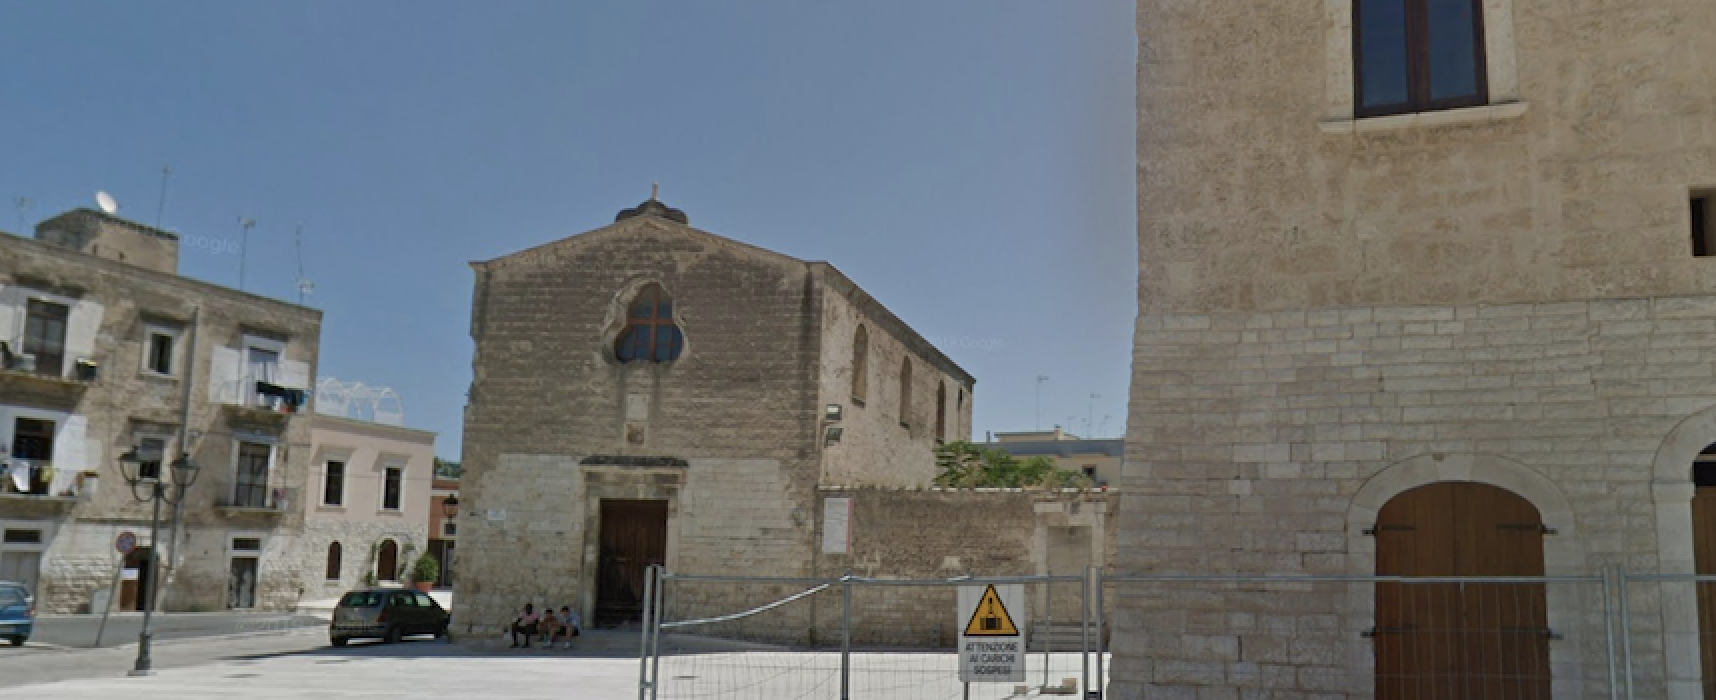 “Donn&Maggio”, domenica visita guidata e apertura straordinaria Chiesa del Purgatorio